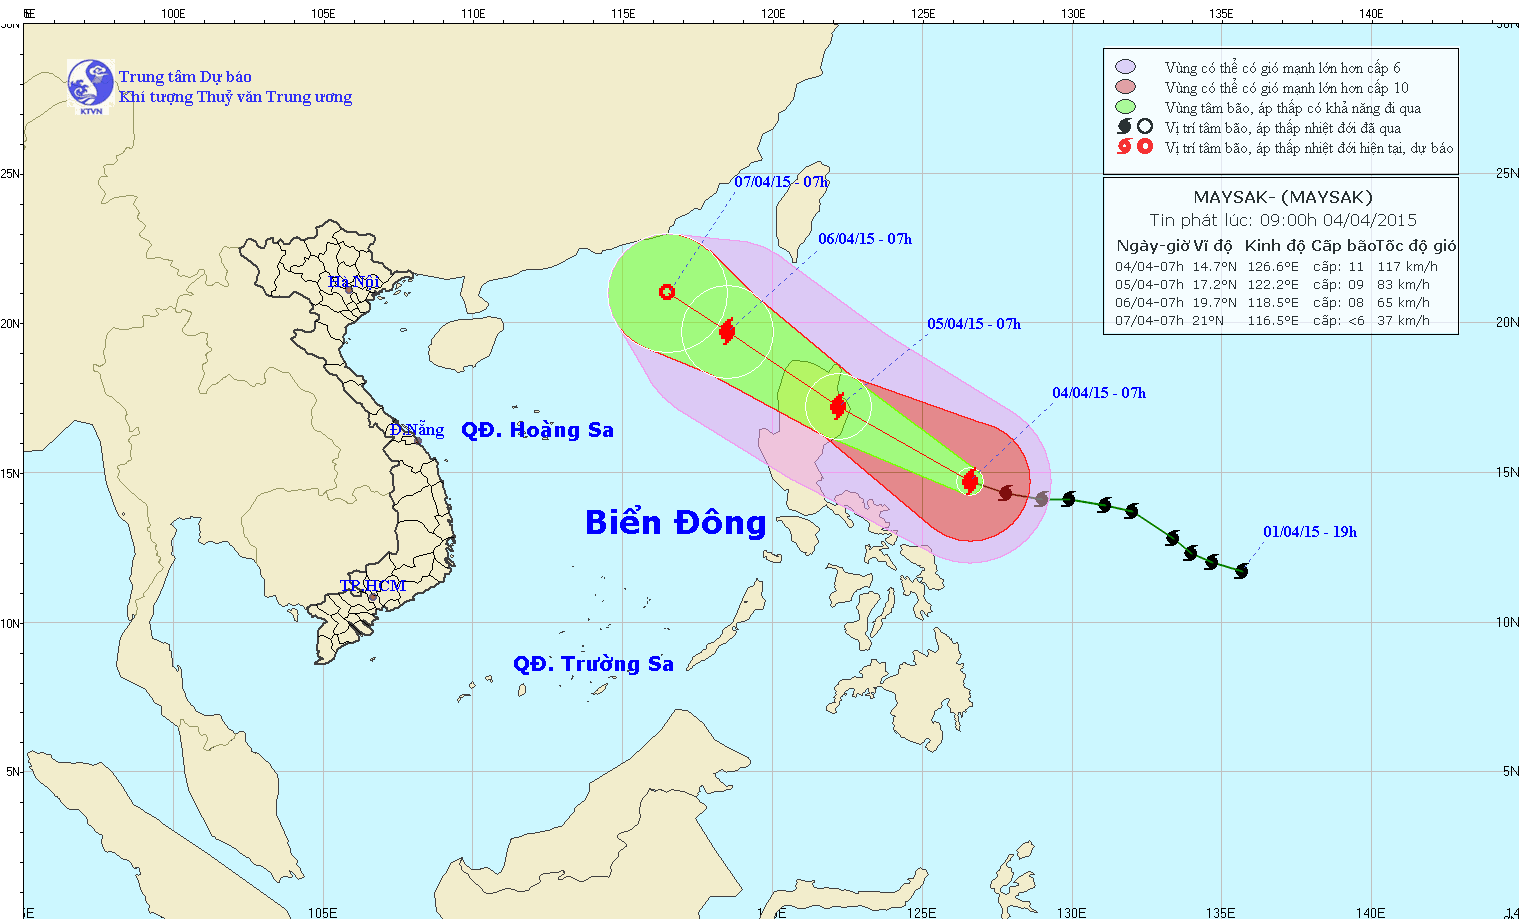 Vị trí và dự báo đường đi của bão Maysak. Nguồn: Trung tâm dự báo KTTVTW.